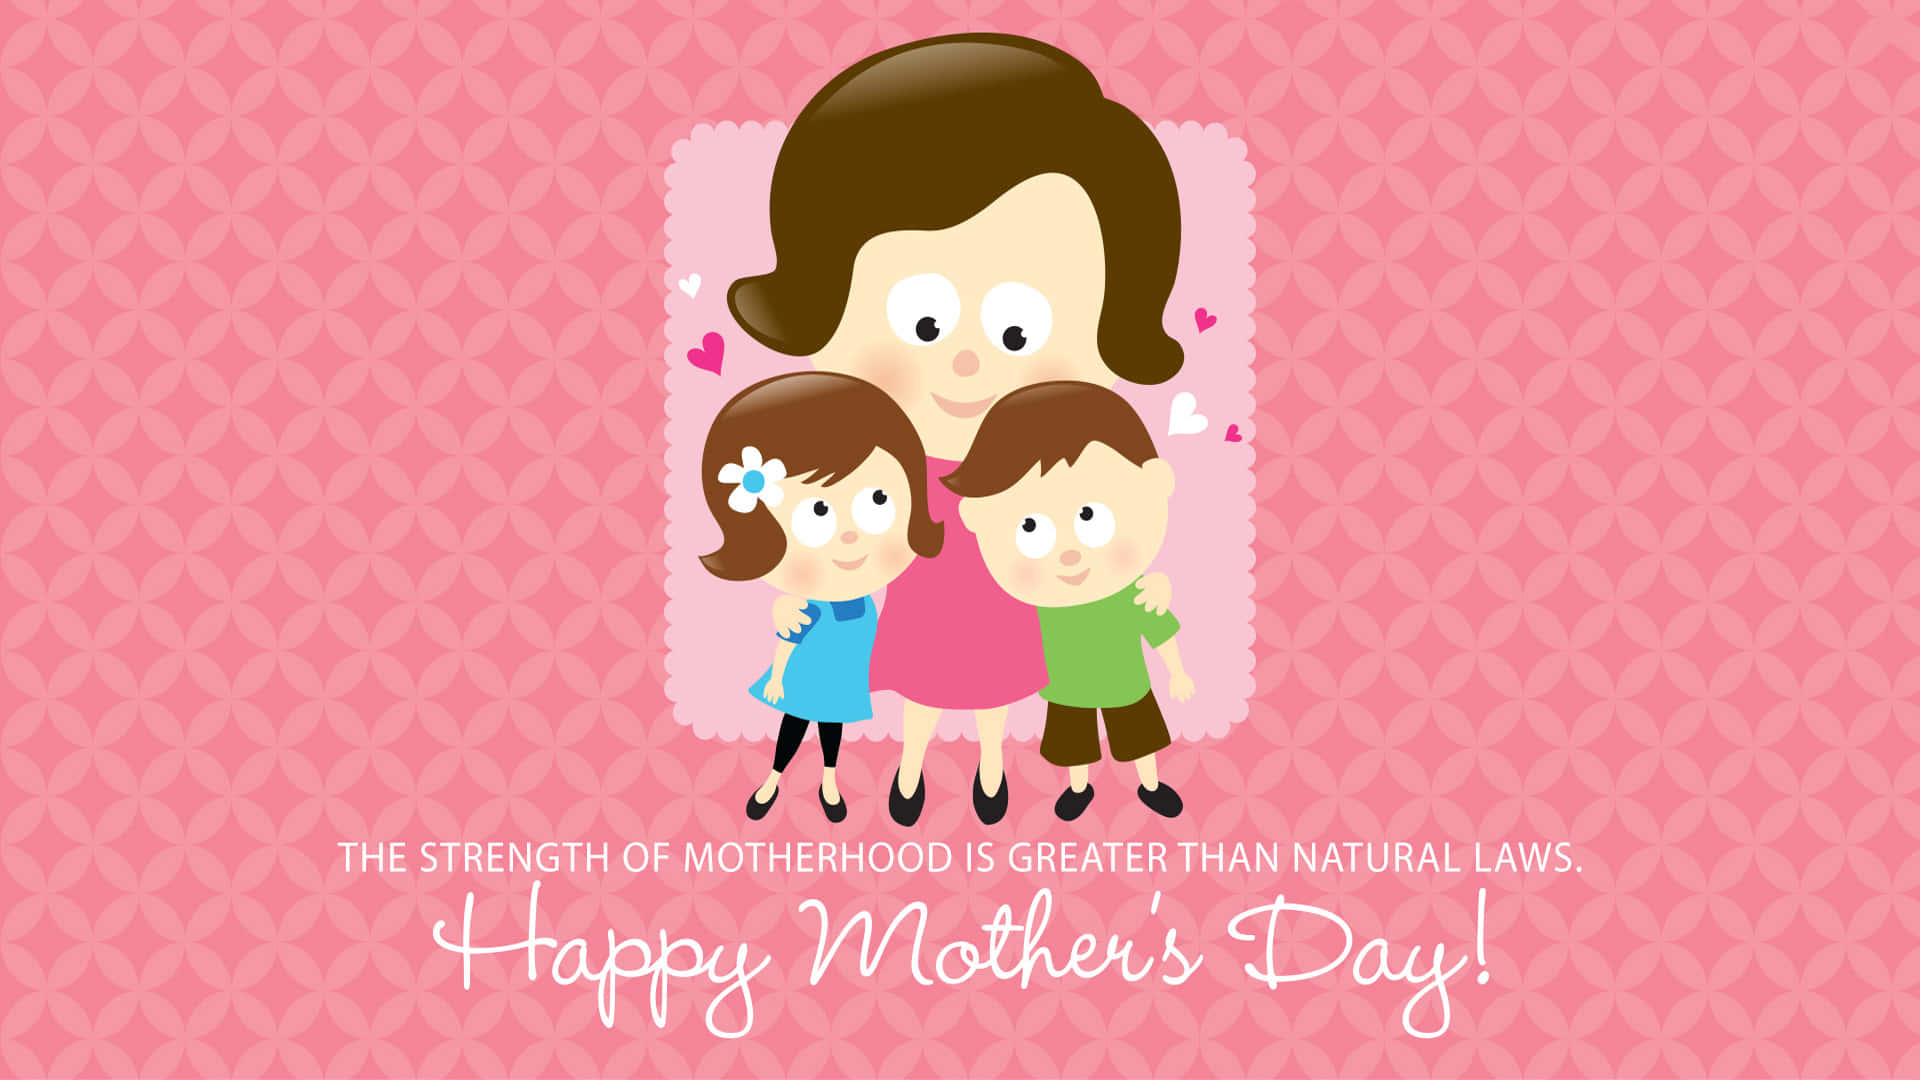 Fejr de fantastiske mødre i dit liv denne #HappyMothersDay Wallpaper